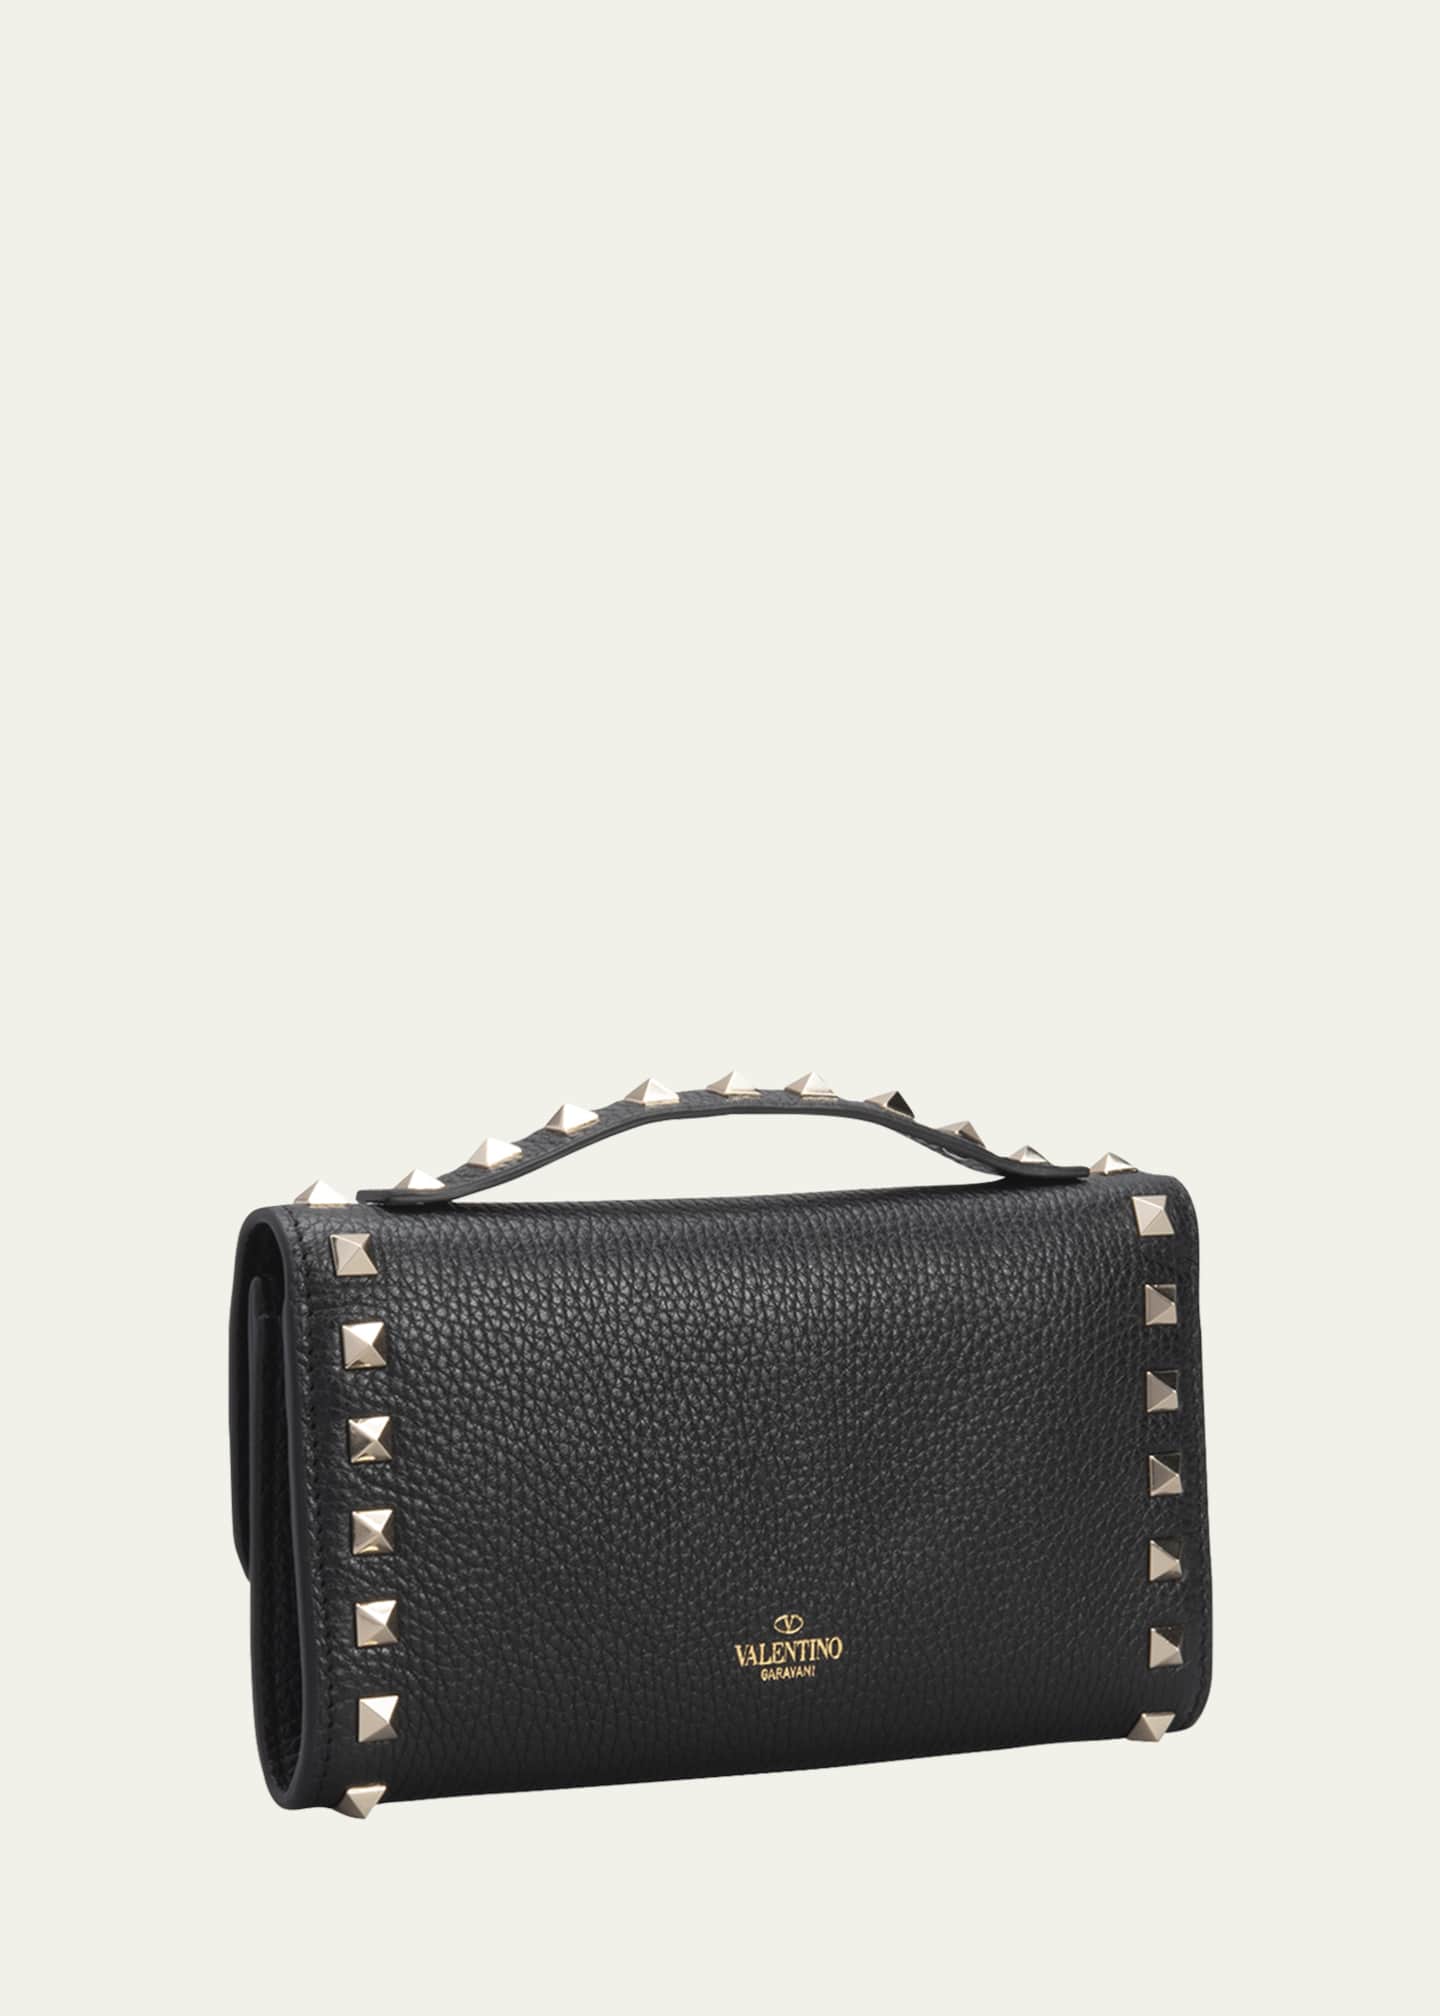 Valentino Garavani Rockstud Pouch Leather Wallet on Chain